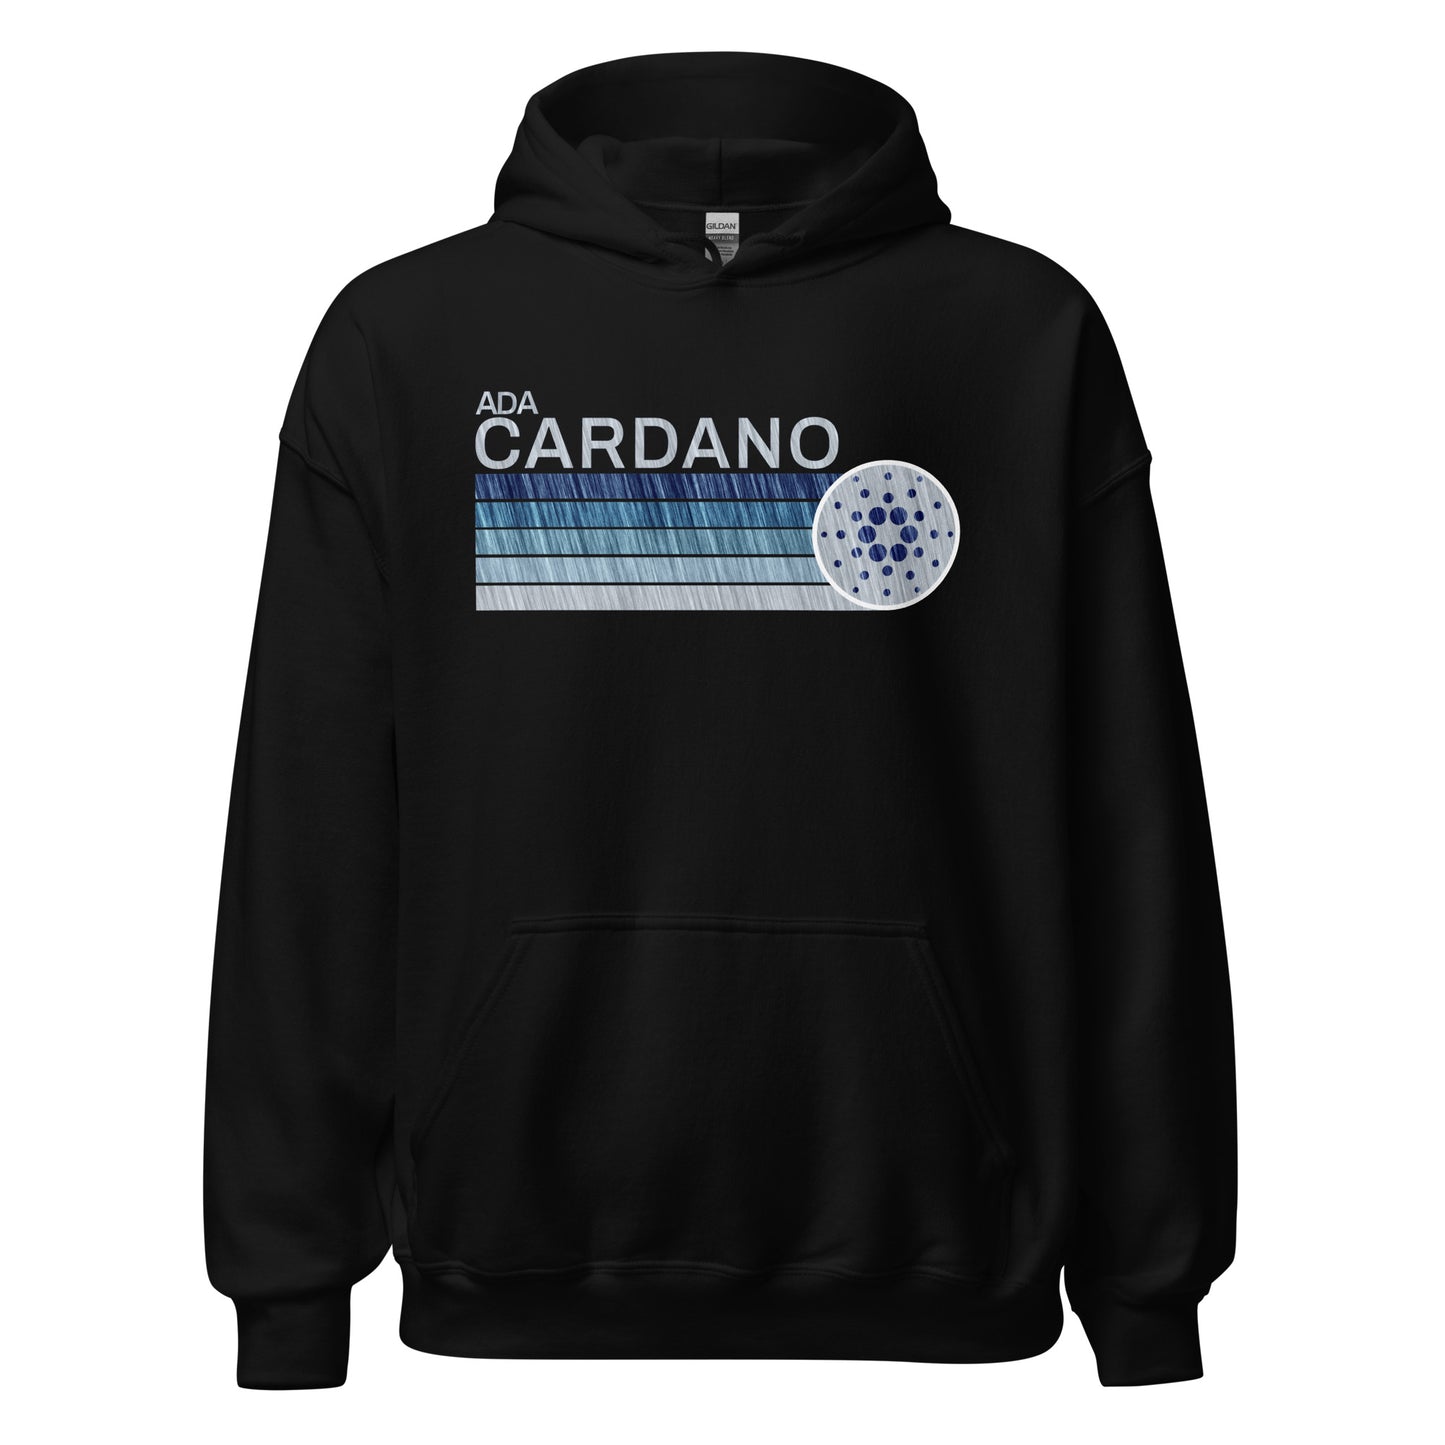 Cardano Vintage Hoodie